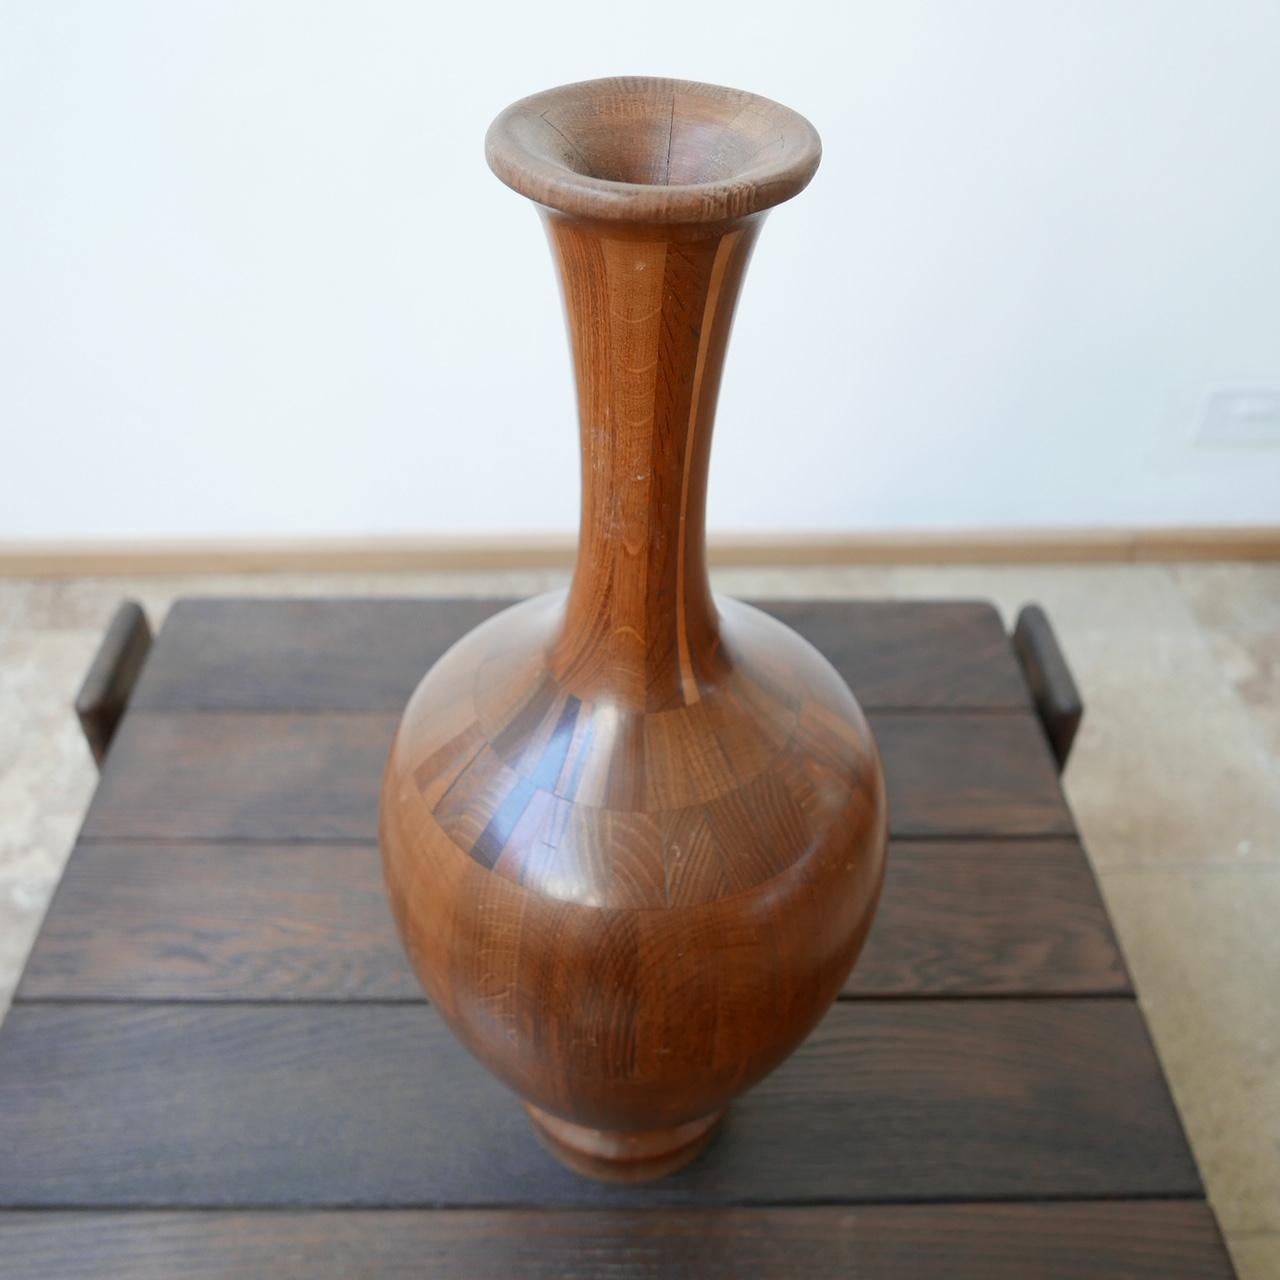 Turned Wooden Midcentury Vase by Maurice Bonami 1